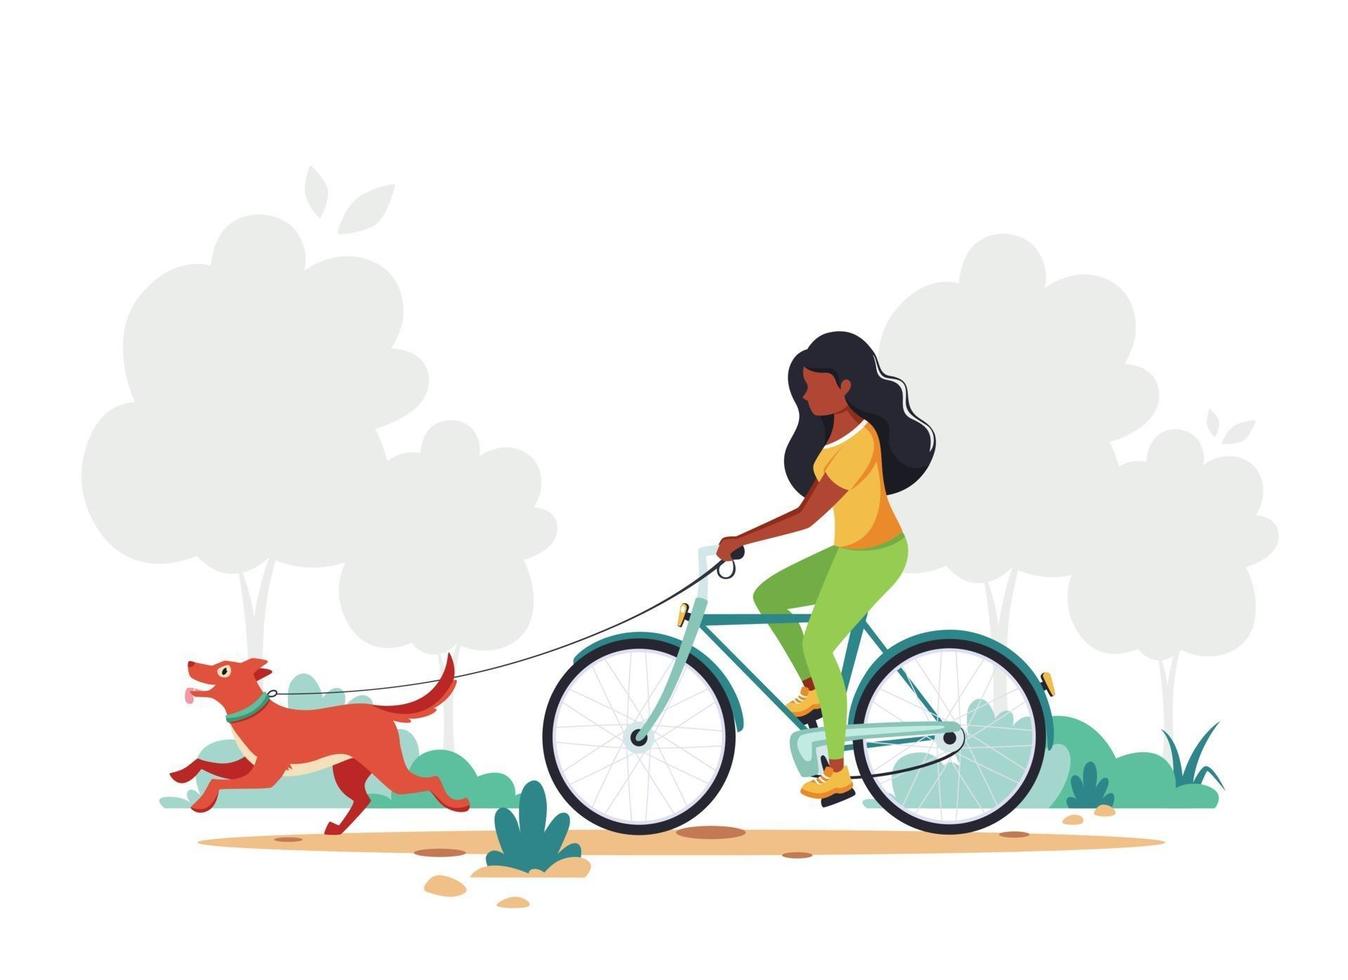 zwarte vrouw rijden fiets met hond in park. gezonde levensstijl, concept voor buitenactiviteiten. vector illustratie.